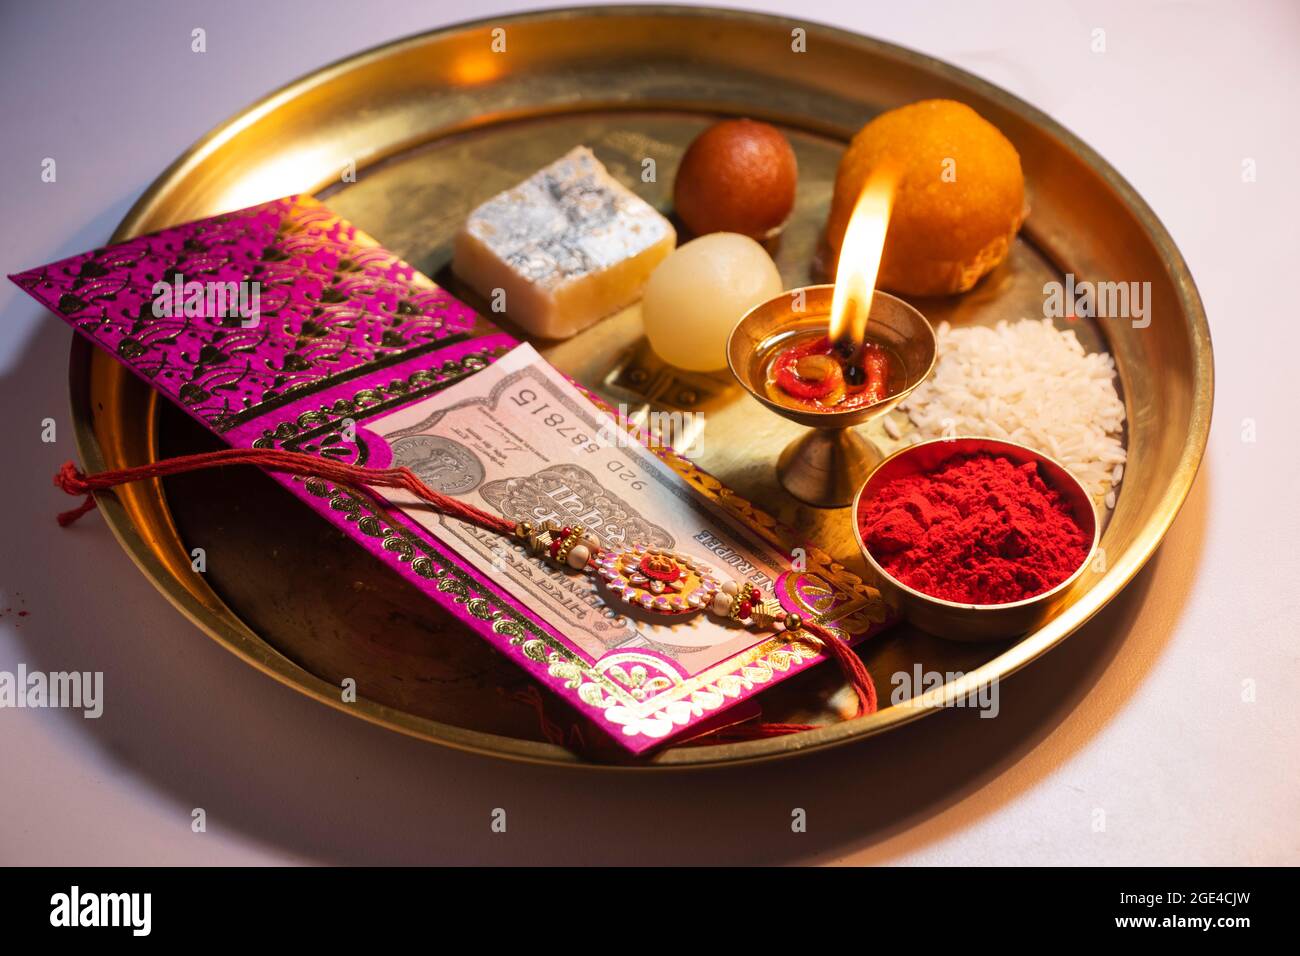 Raksha Bandhan Traditional Rakhis placed in Decorative plate with sweet